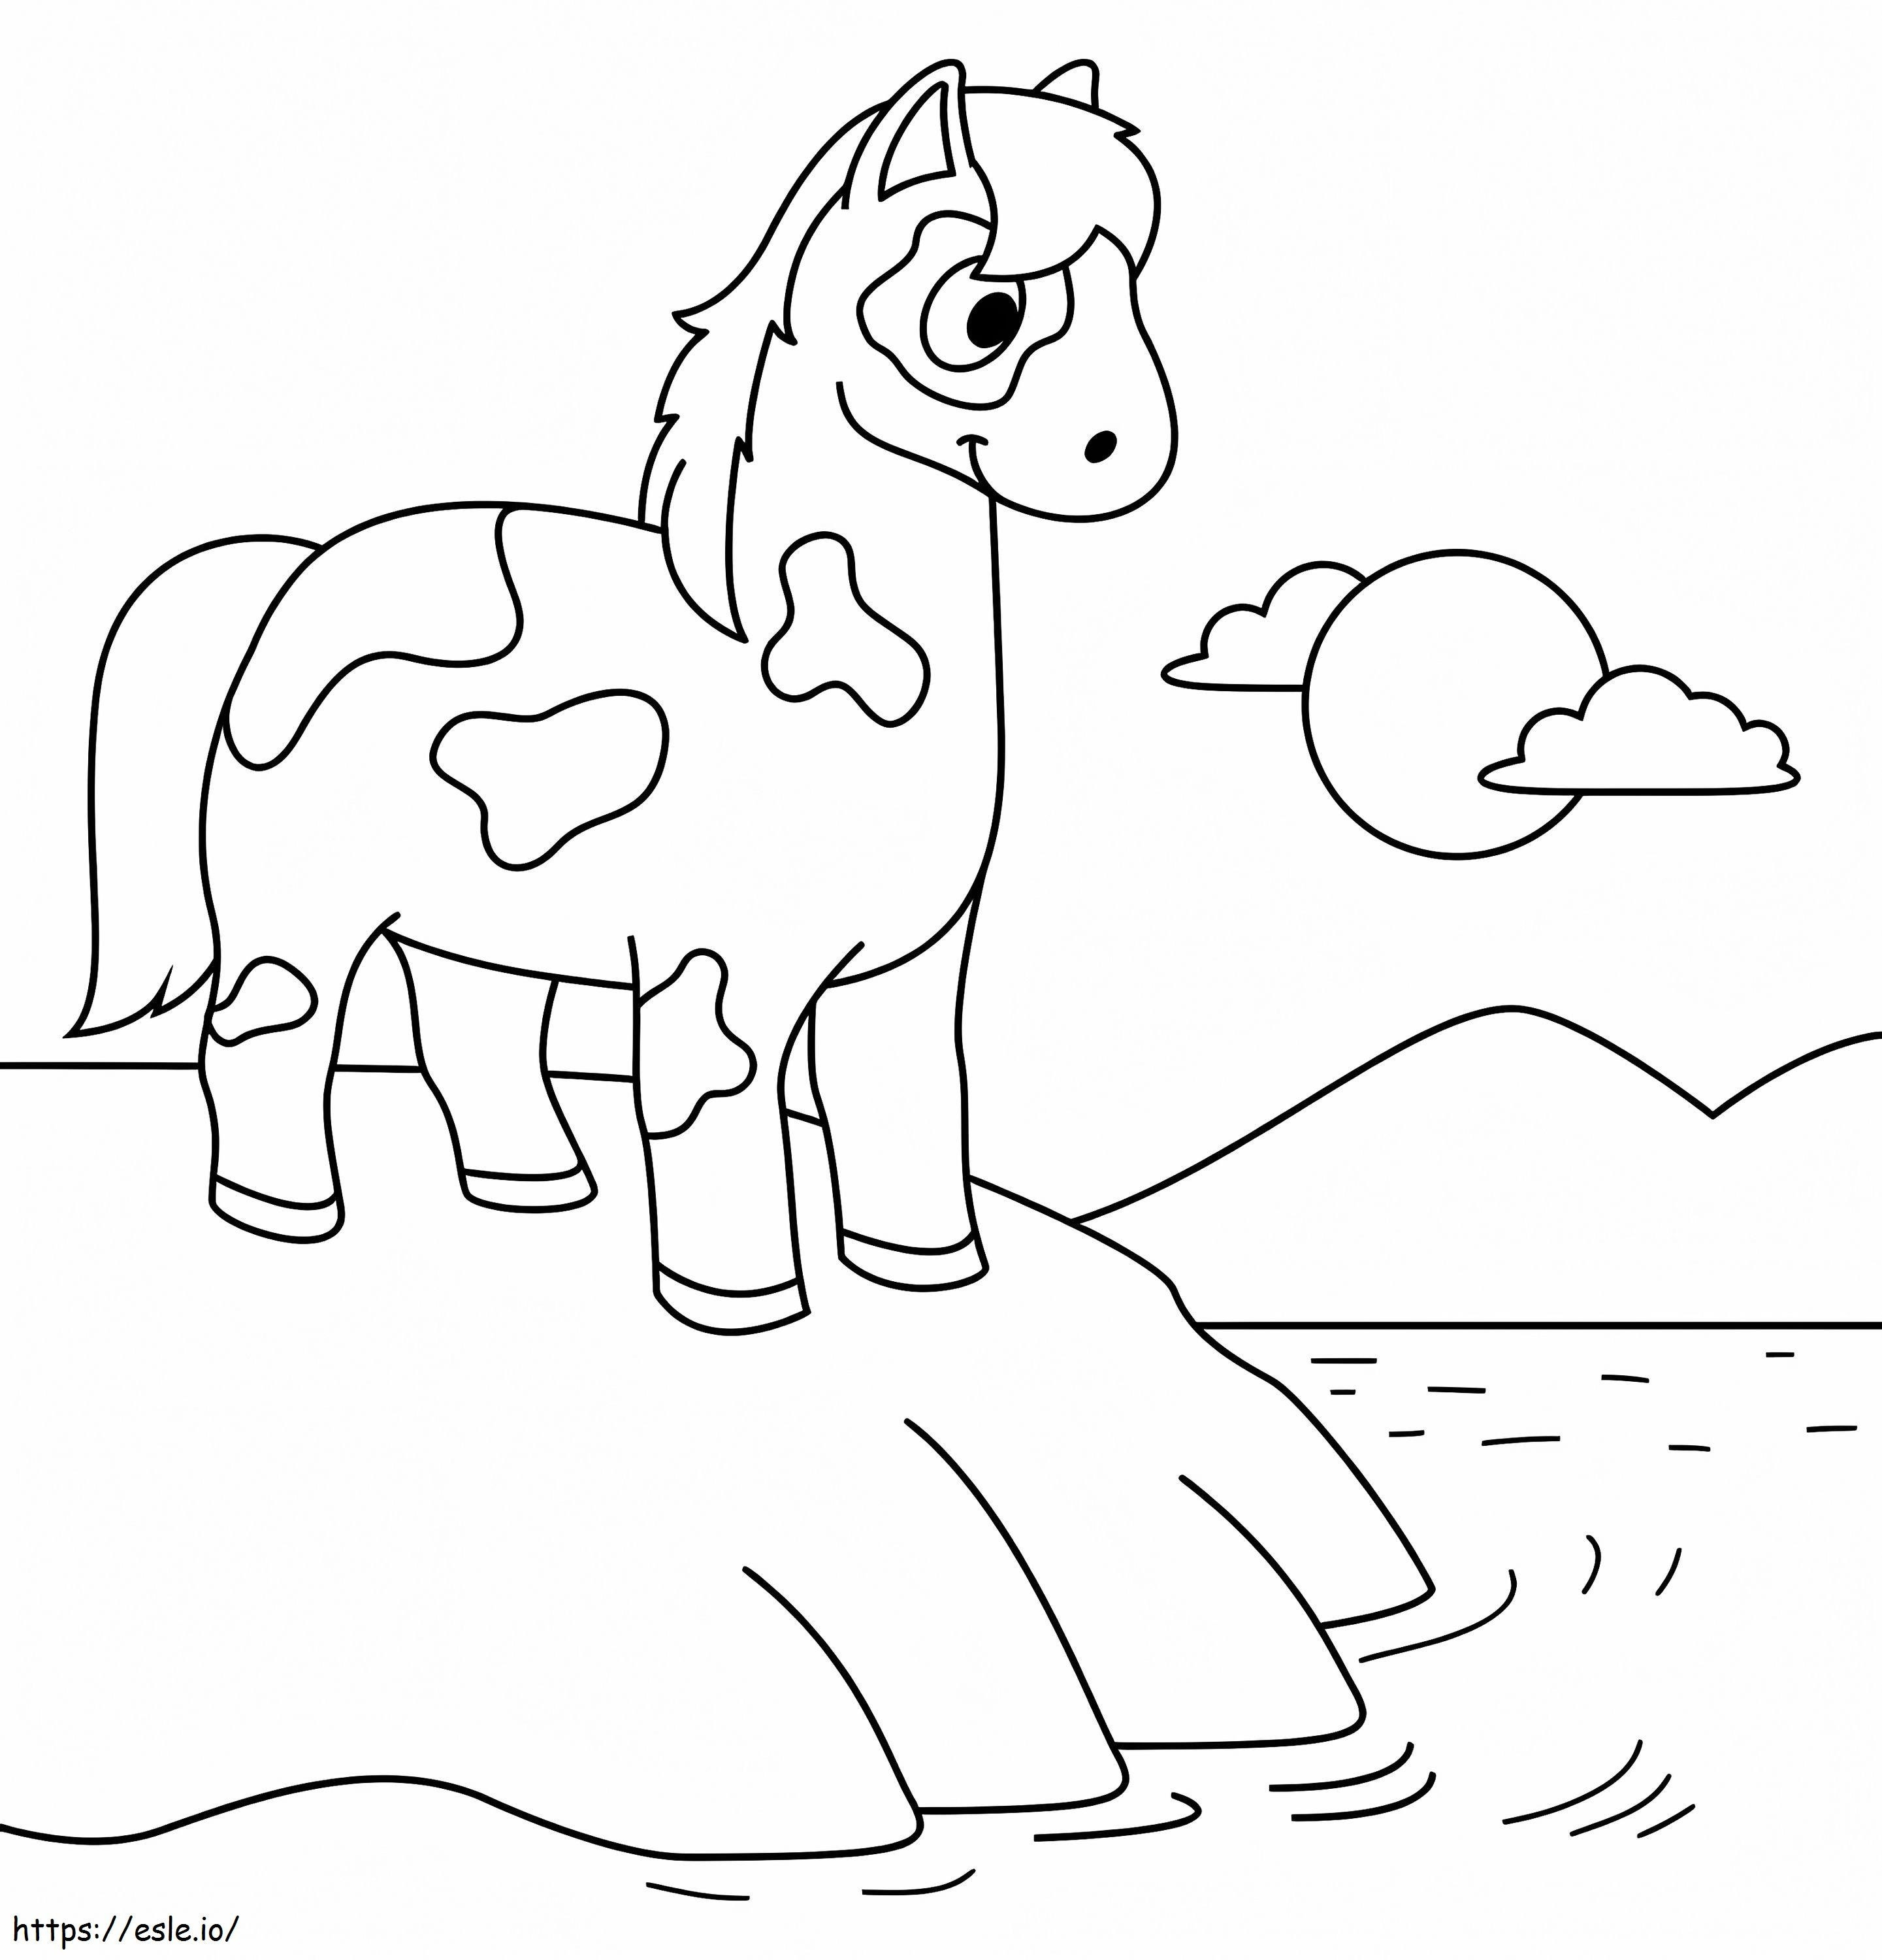 Cavalo na praia para colorir